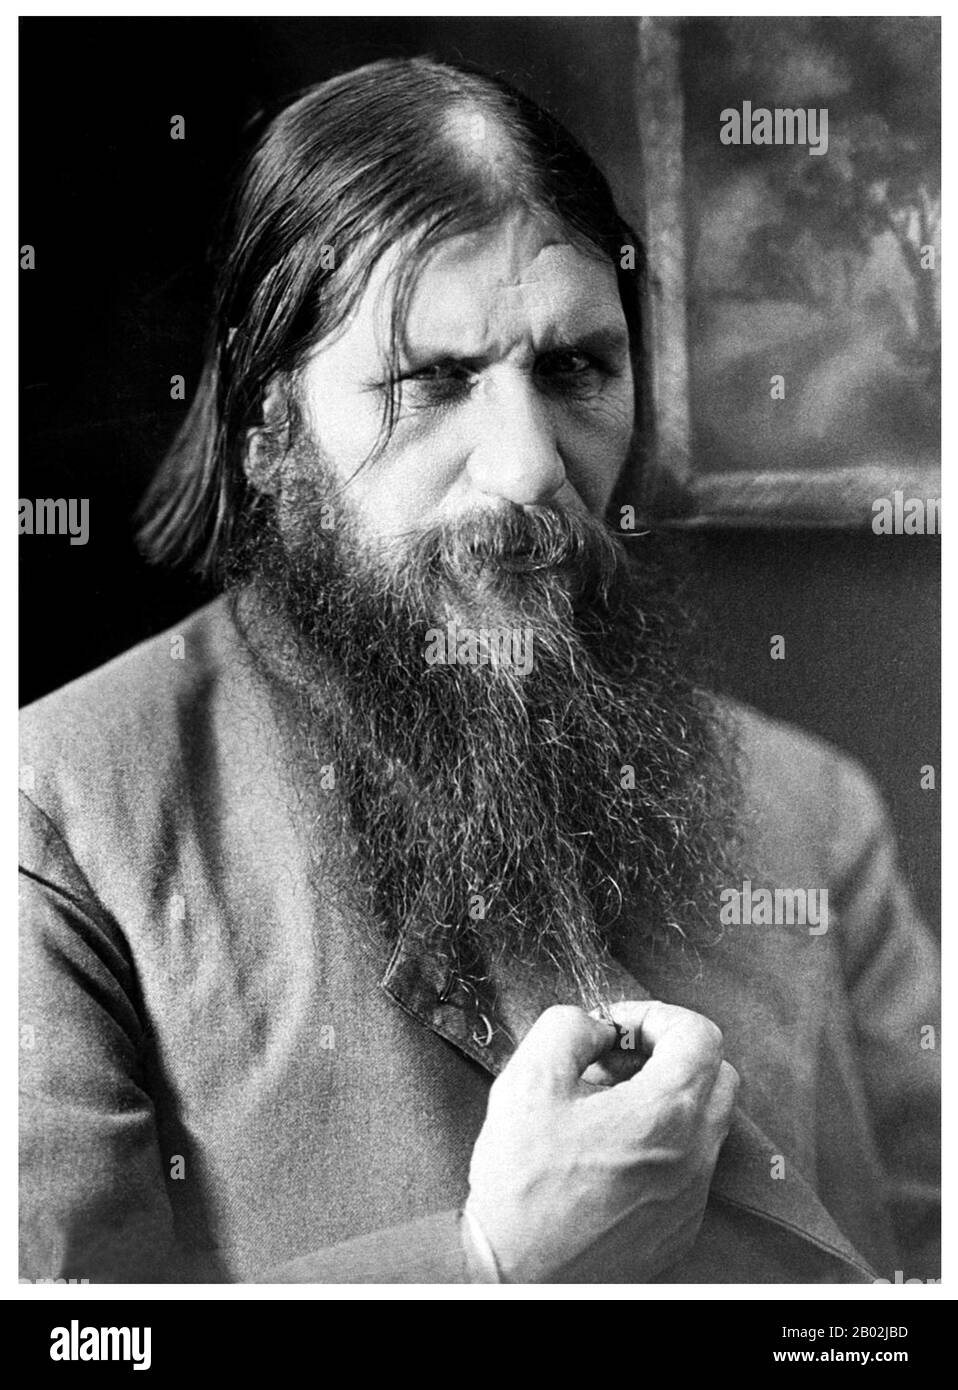 Grigori Yefimovich Rasputin; battezzato il 22 gennaio 1869 – assassinato il 30 dicembre 1916 fu un contadino russo, mistico, guaritore di fede e consigliere privato dei Romanov. Divenne una figura influente a San Pietroburgo dopo l'agosto 1915 quando lo zar Nicolas II prese il comando dell'esercito sul fronte. C'è molta incertezza sulla vita di Rasputin e sul grado di influenza che ha esercitato sullo Zar e sul suo governo. I conti sono spesso basati su memorie dubbie, hearsay e leggenda. Mentre la sua influenza e il suo ruolo possono essere stati esagerati, gli storici concordano sul fatto che la sua presenza ha giocato un ruolo significativo Foto Stock